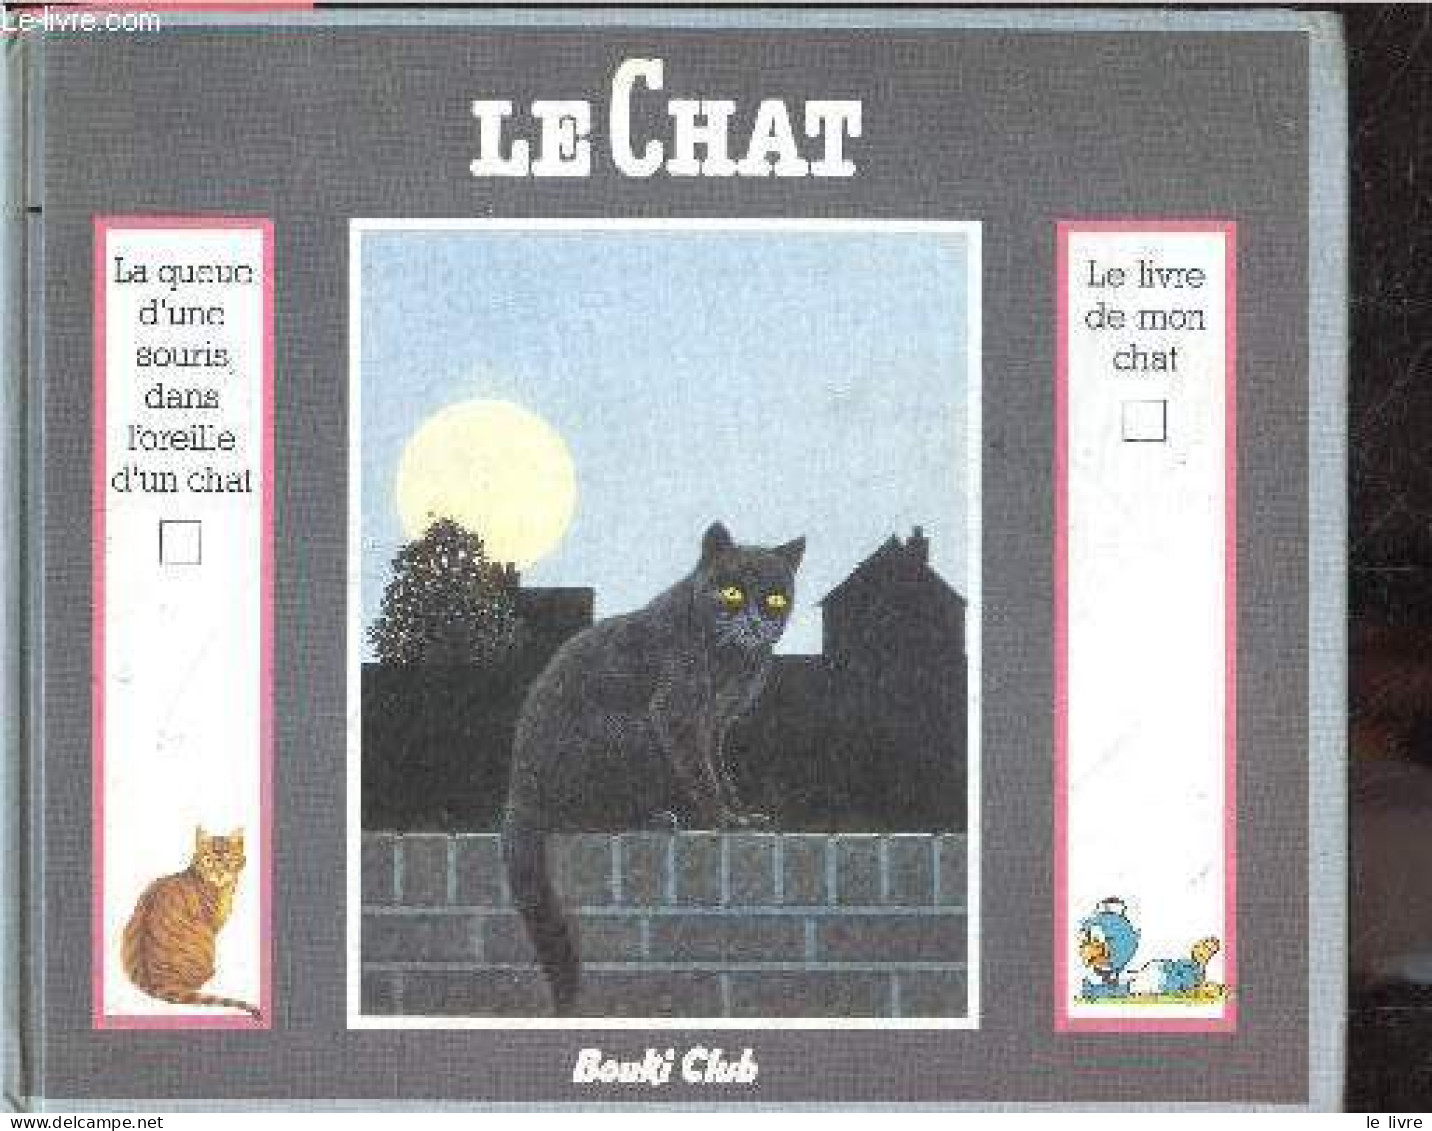 Le Chat - La Queue D'une Souris Dans L'oreille D'un Chat + Le Livre De Mon Chat - LANDEL VINCENT- GINA RUCK PAUQUET - RO - Animali